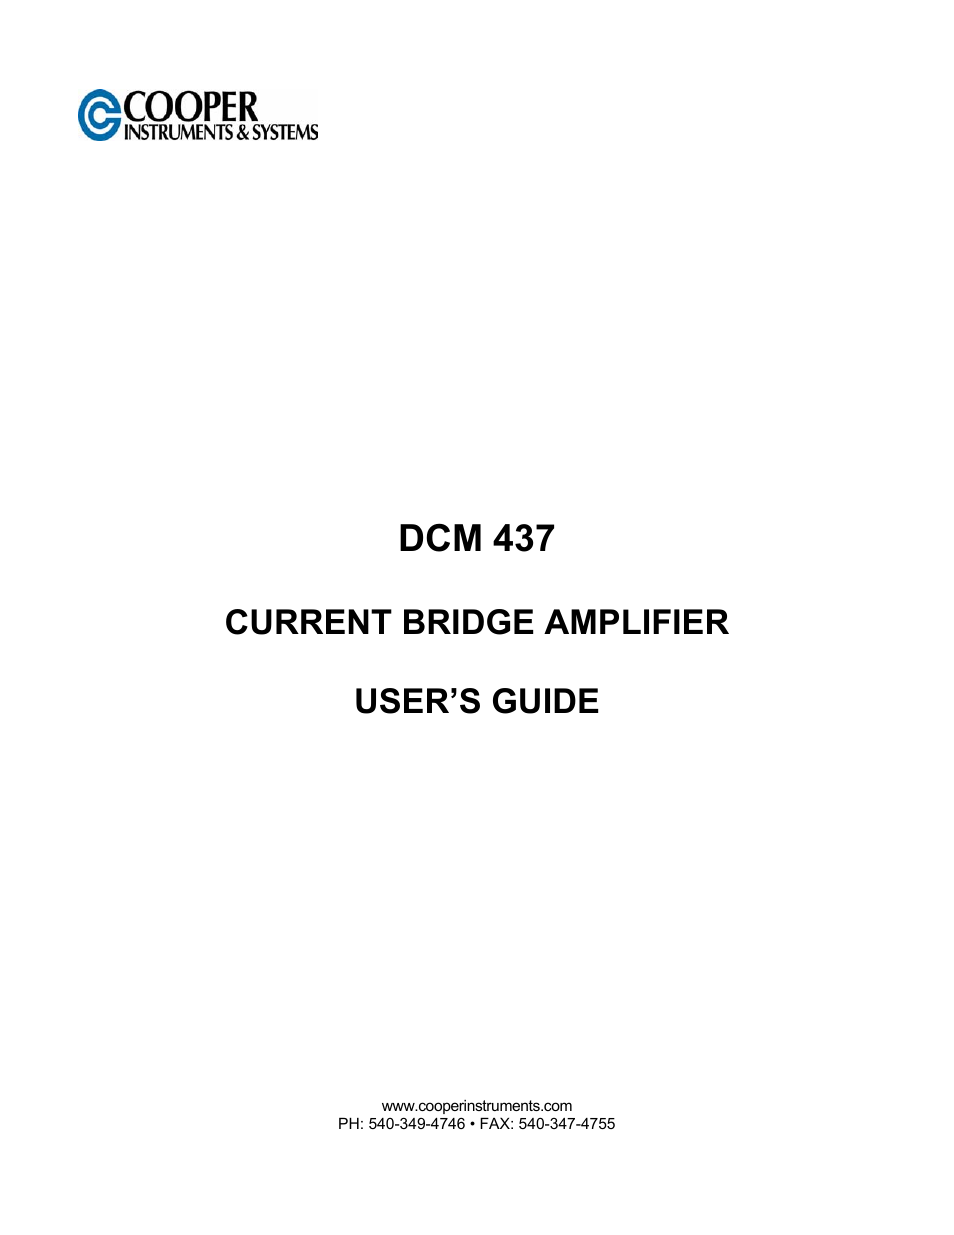 DCM 437 Current Bridge Amplifier